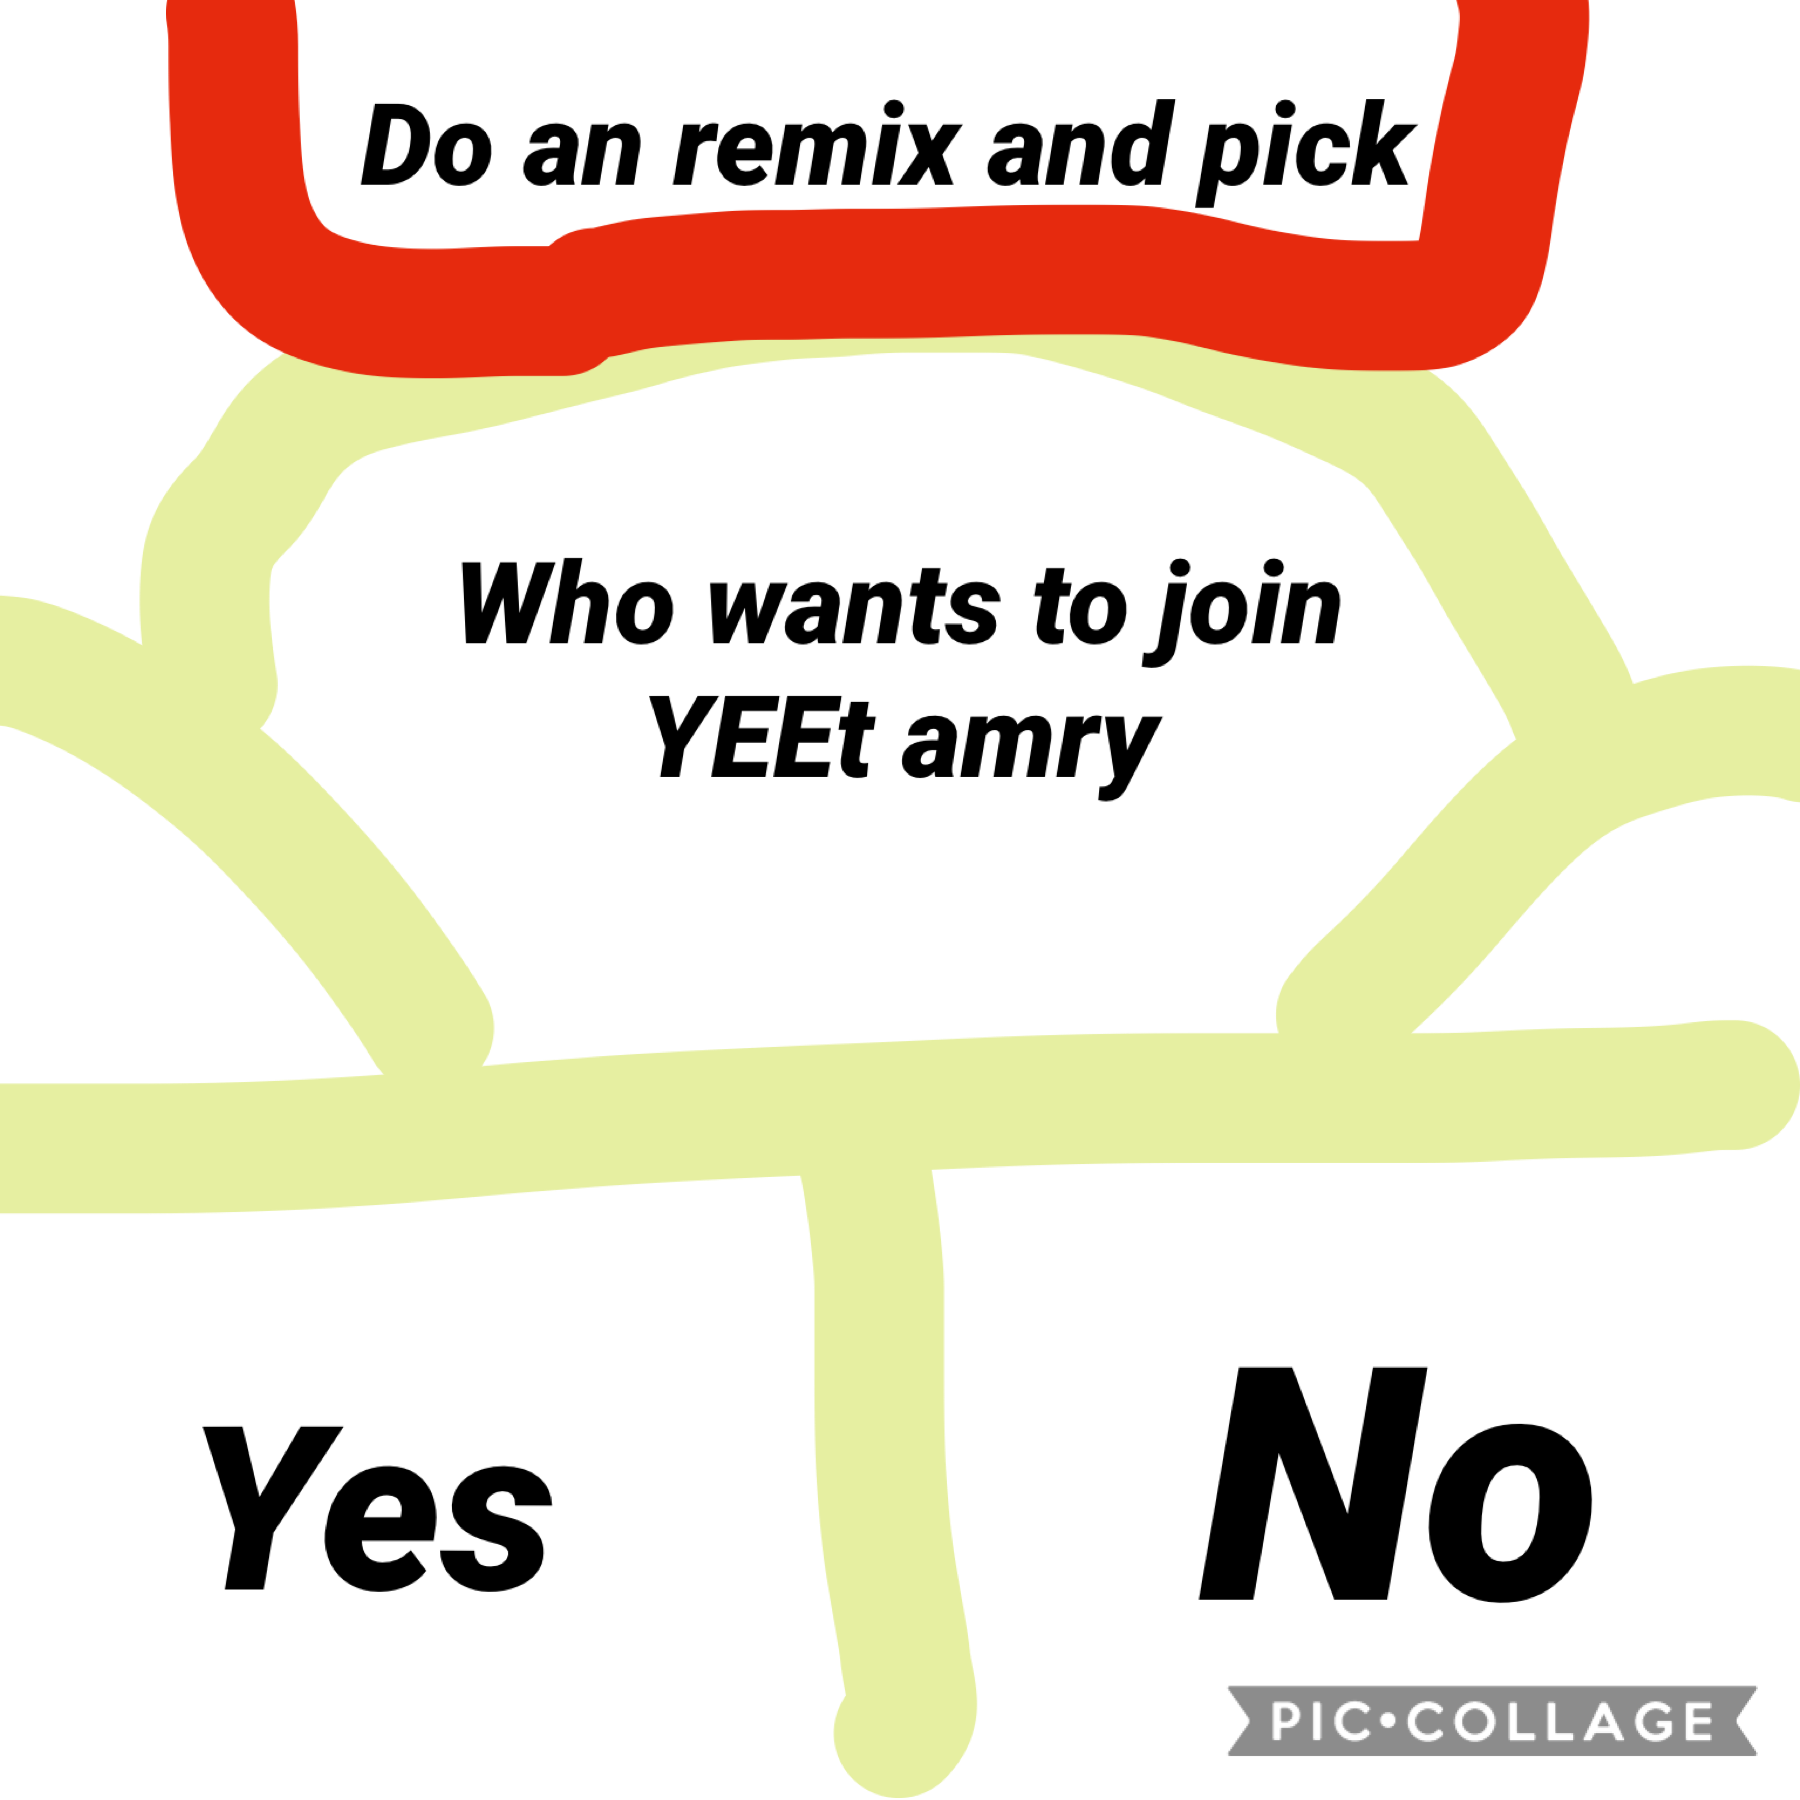 Do remix to chose 